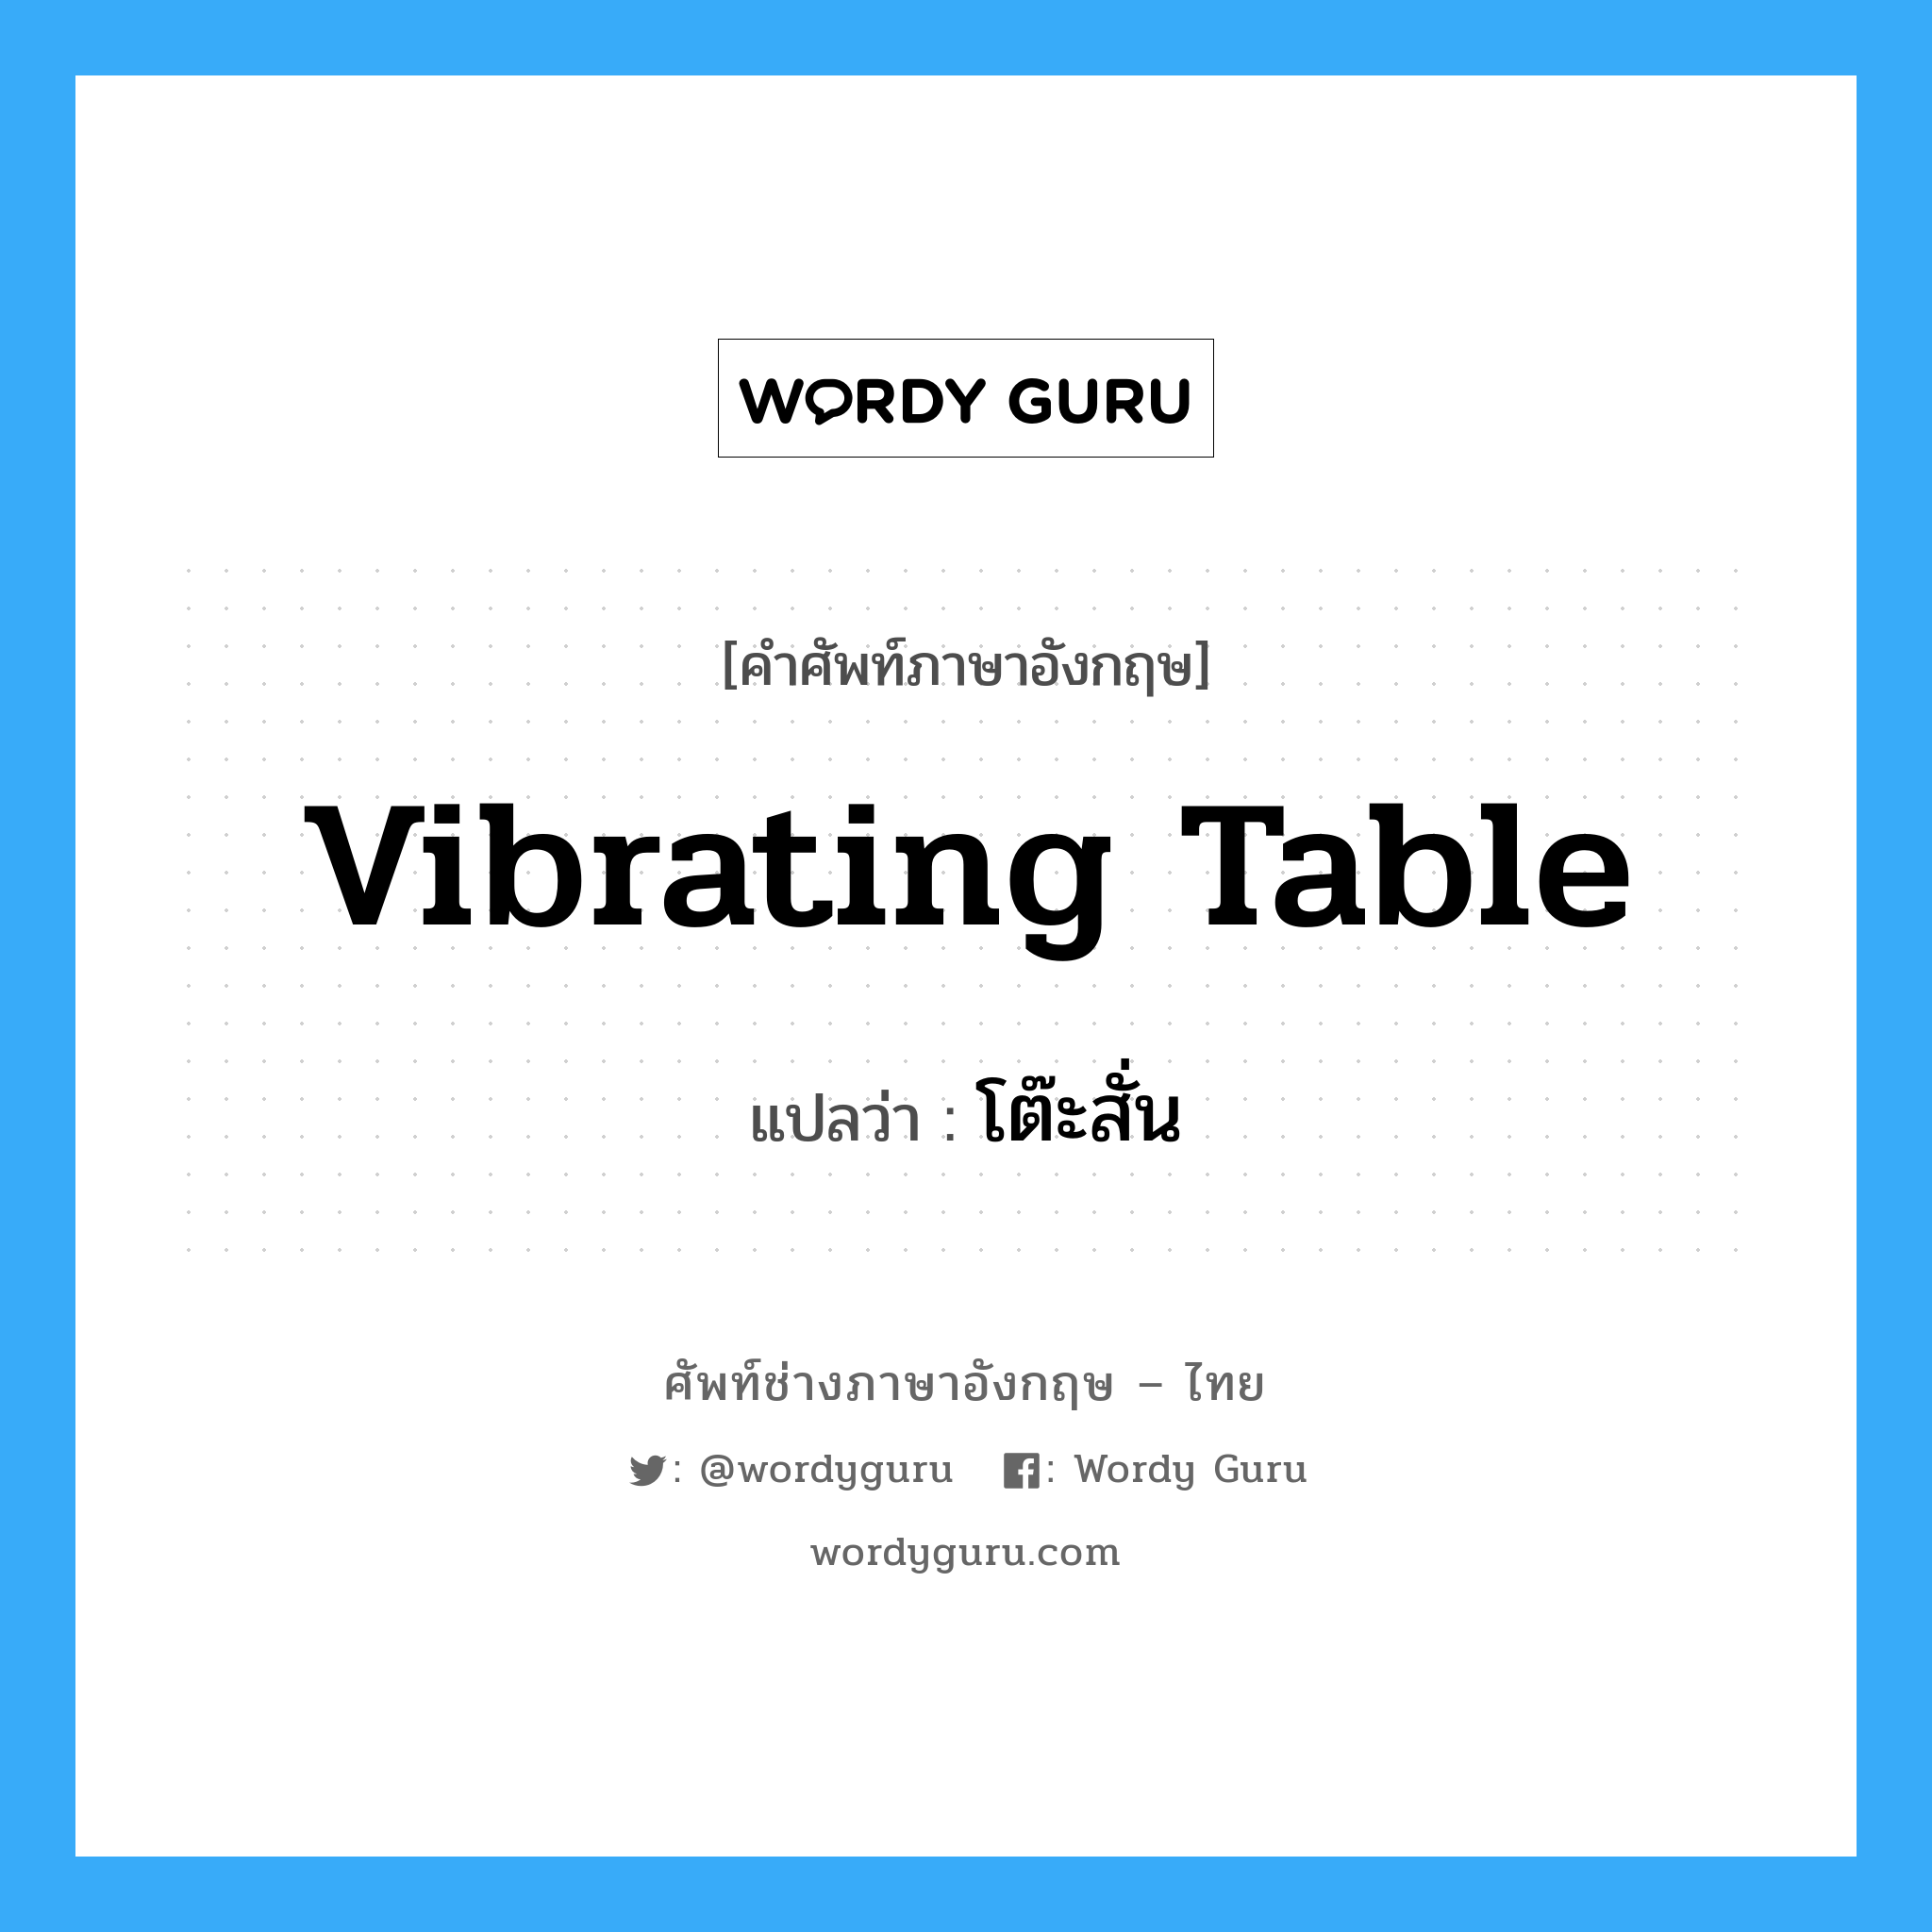 โต๊ะสั่น ภาษาอังกฤษ?, คำศัพท์ช่างภาษาอังกฤษ - ไทย โต๊ะสั่น คำศัพท์ภาษาอังกฤษ โต๊ะสั่น แปลว่า vibrating table